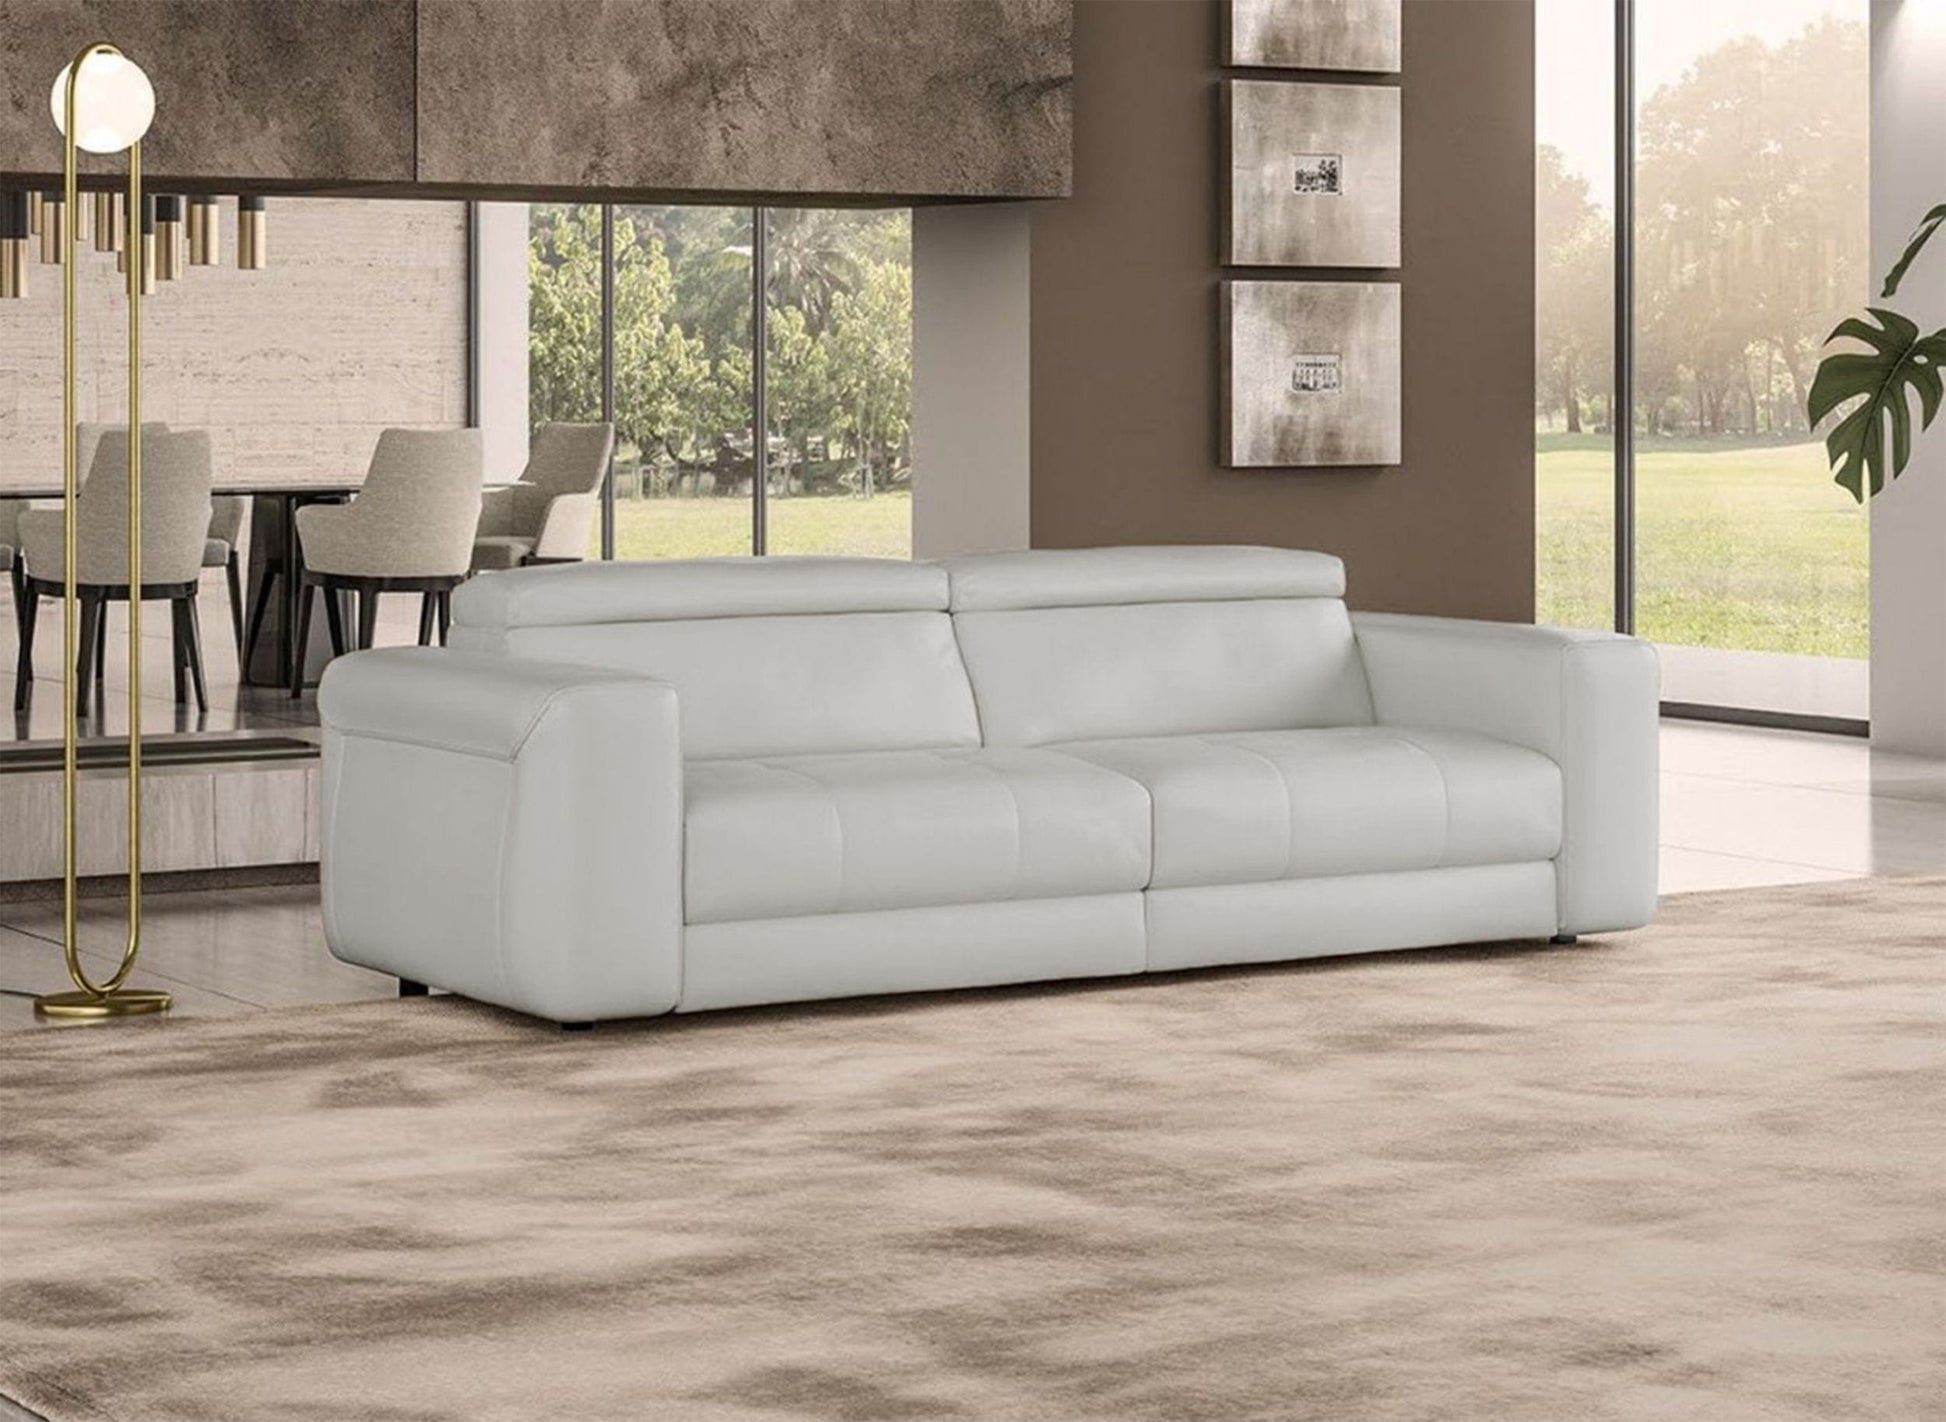 Coronelli Collezioni Icon - Modern Italian Grey Leather Queen Size Sofa Bed | Modishstore | Sofas